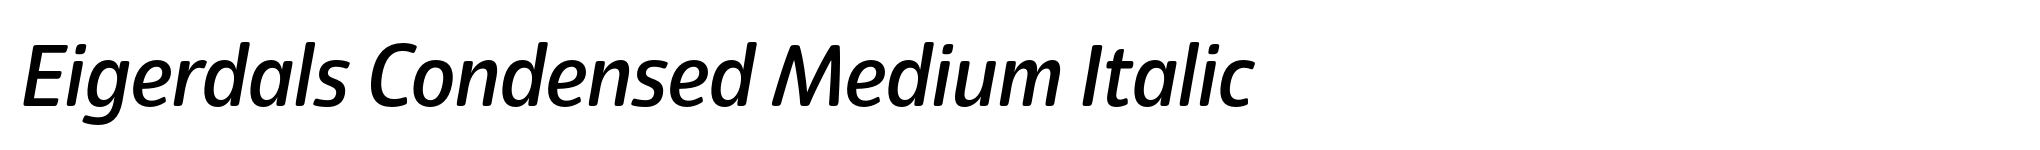 Eigerdals Condensed Medium Italic image